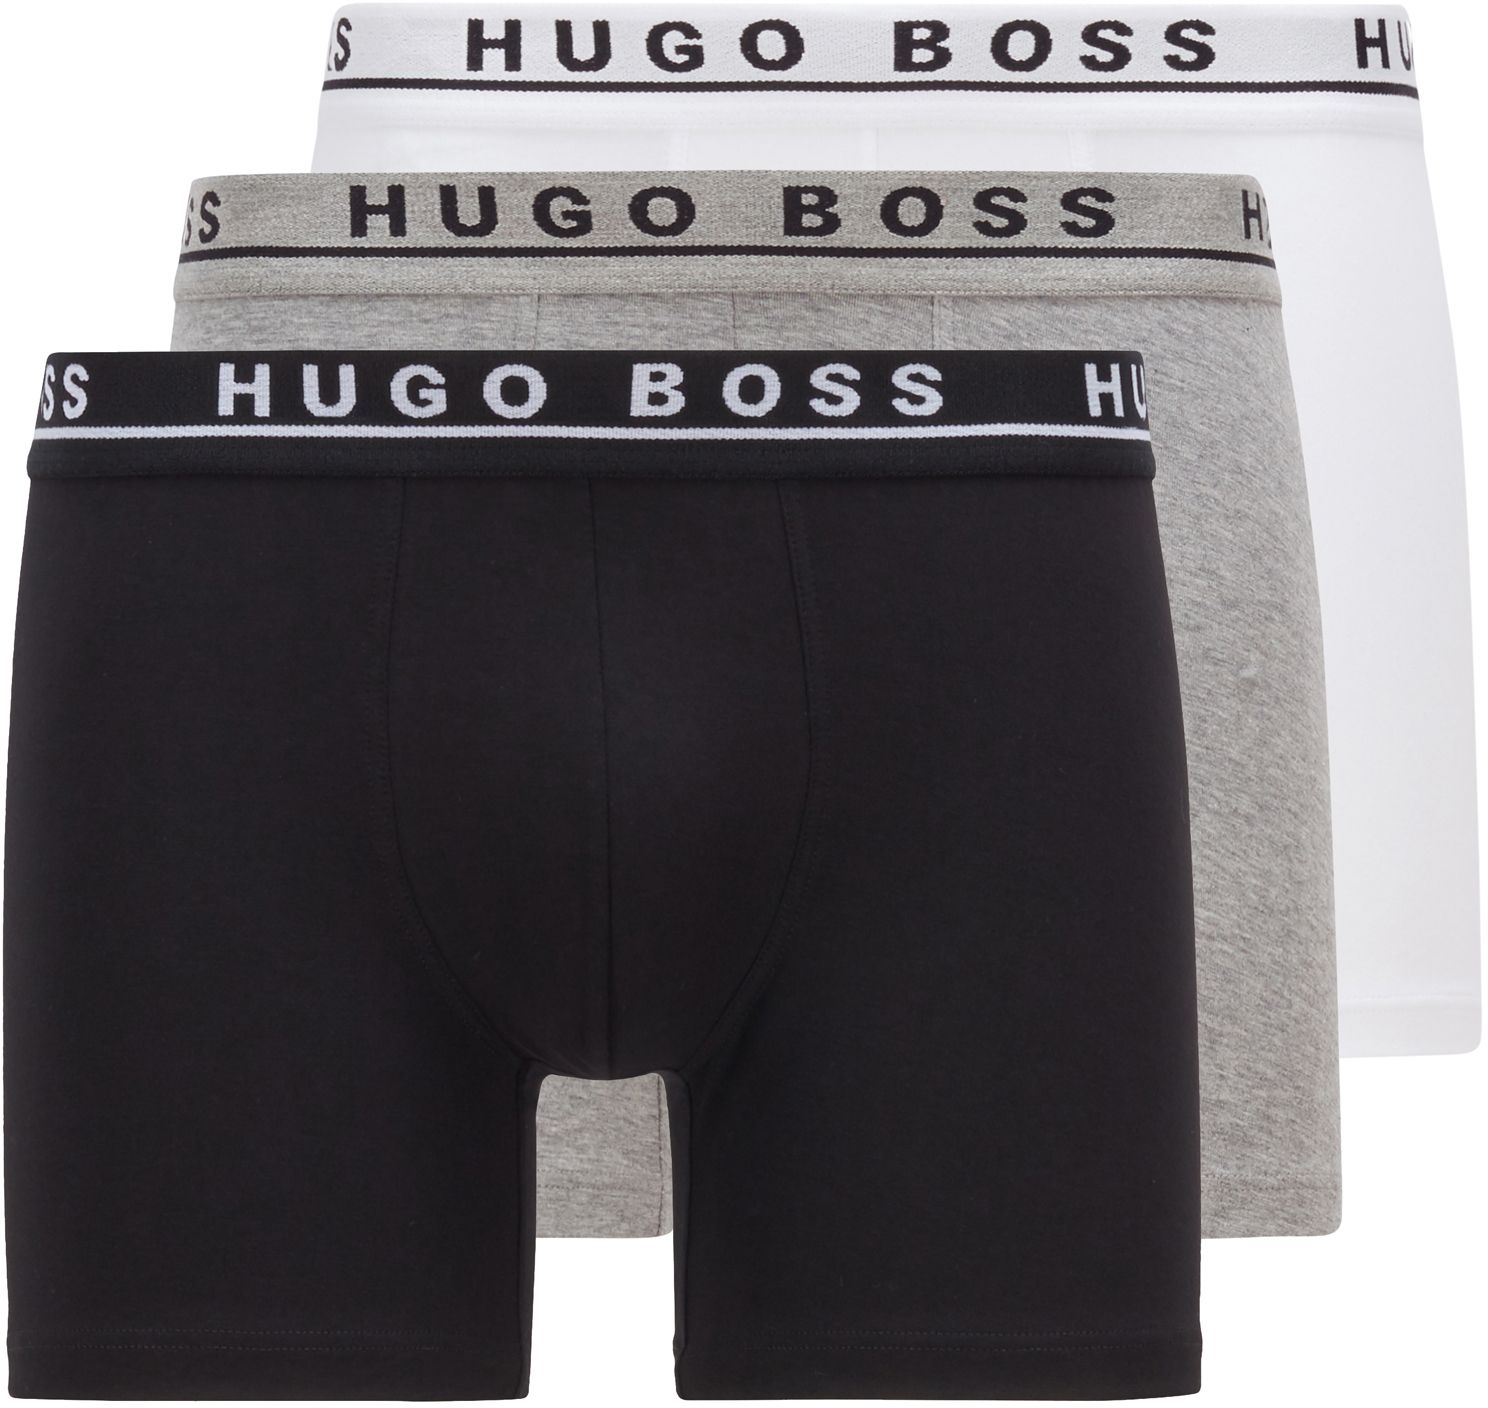 Hugo Boss Boxers Lot de 3 Multicolores Blanc Gris Noir taille M